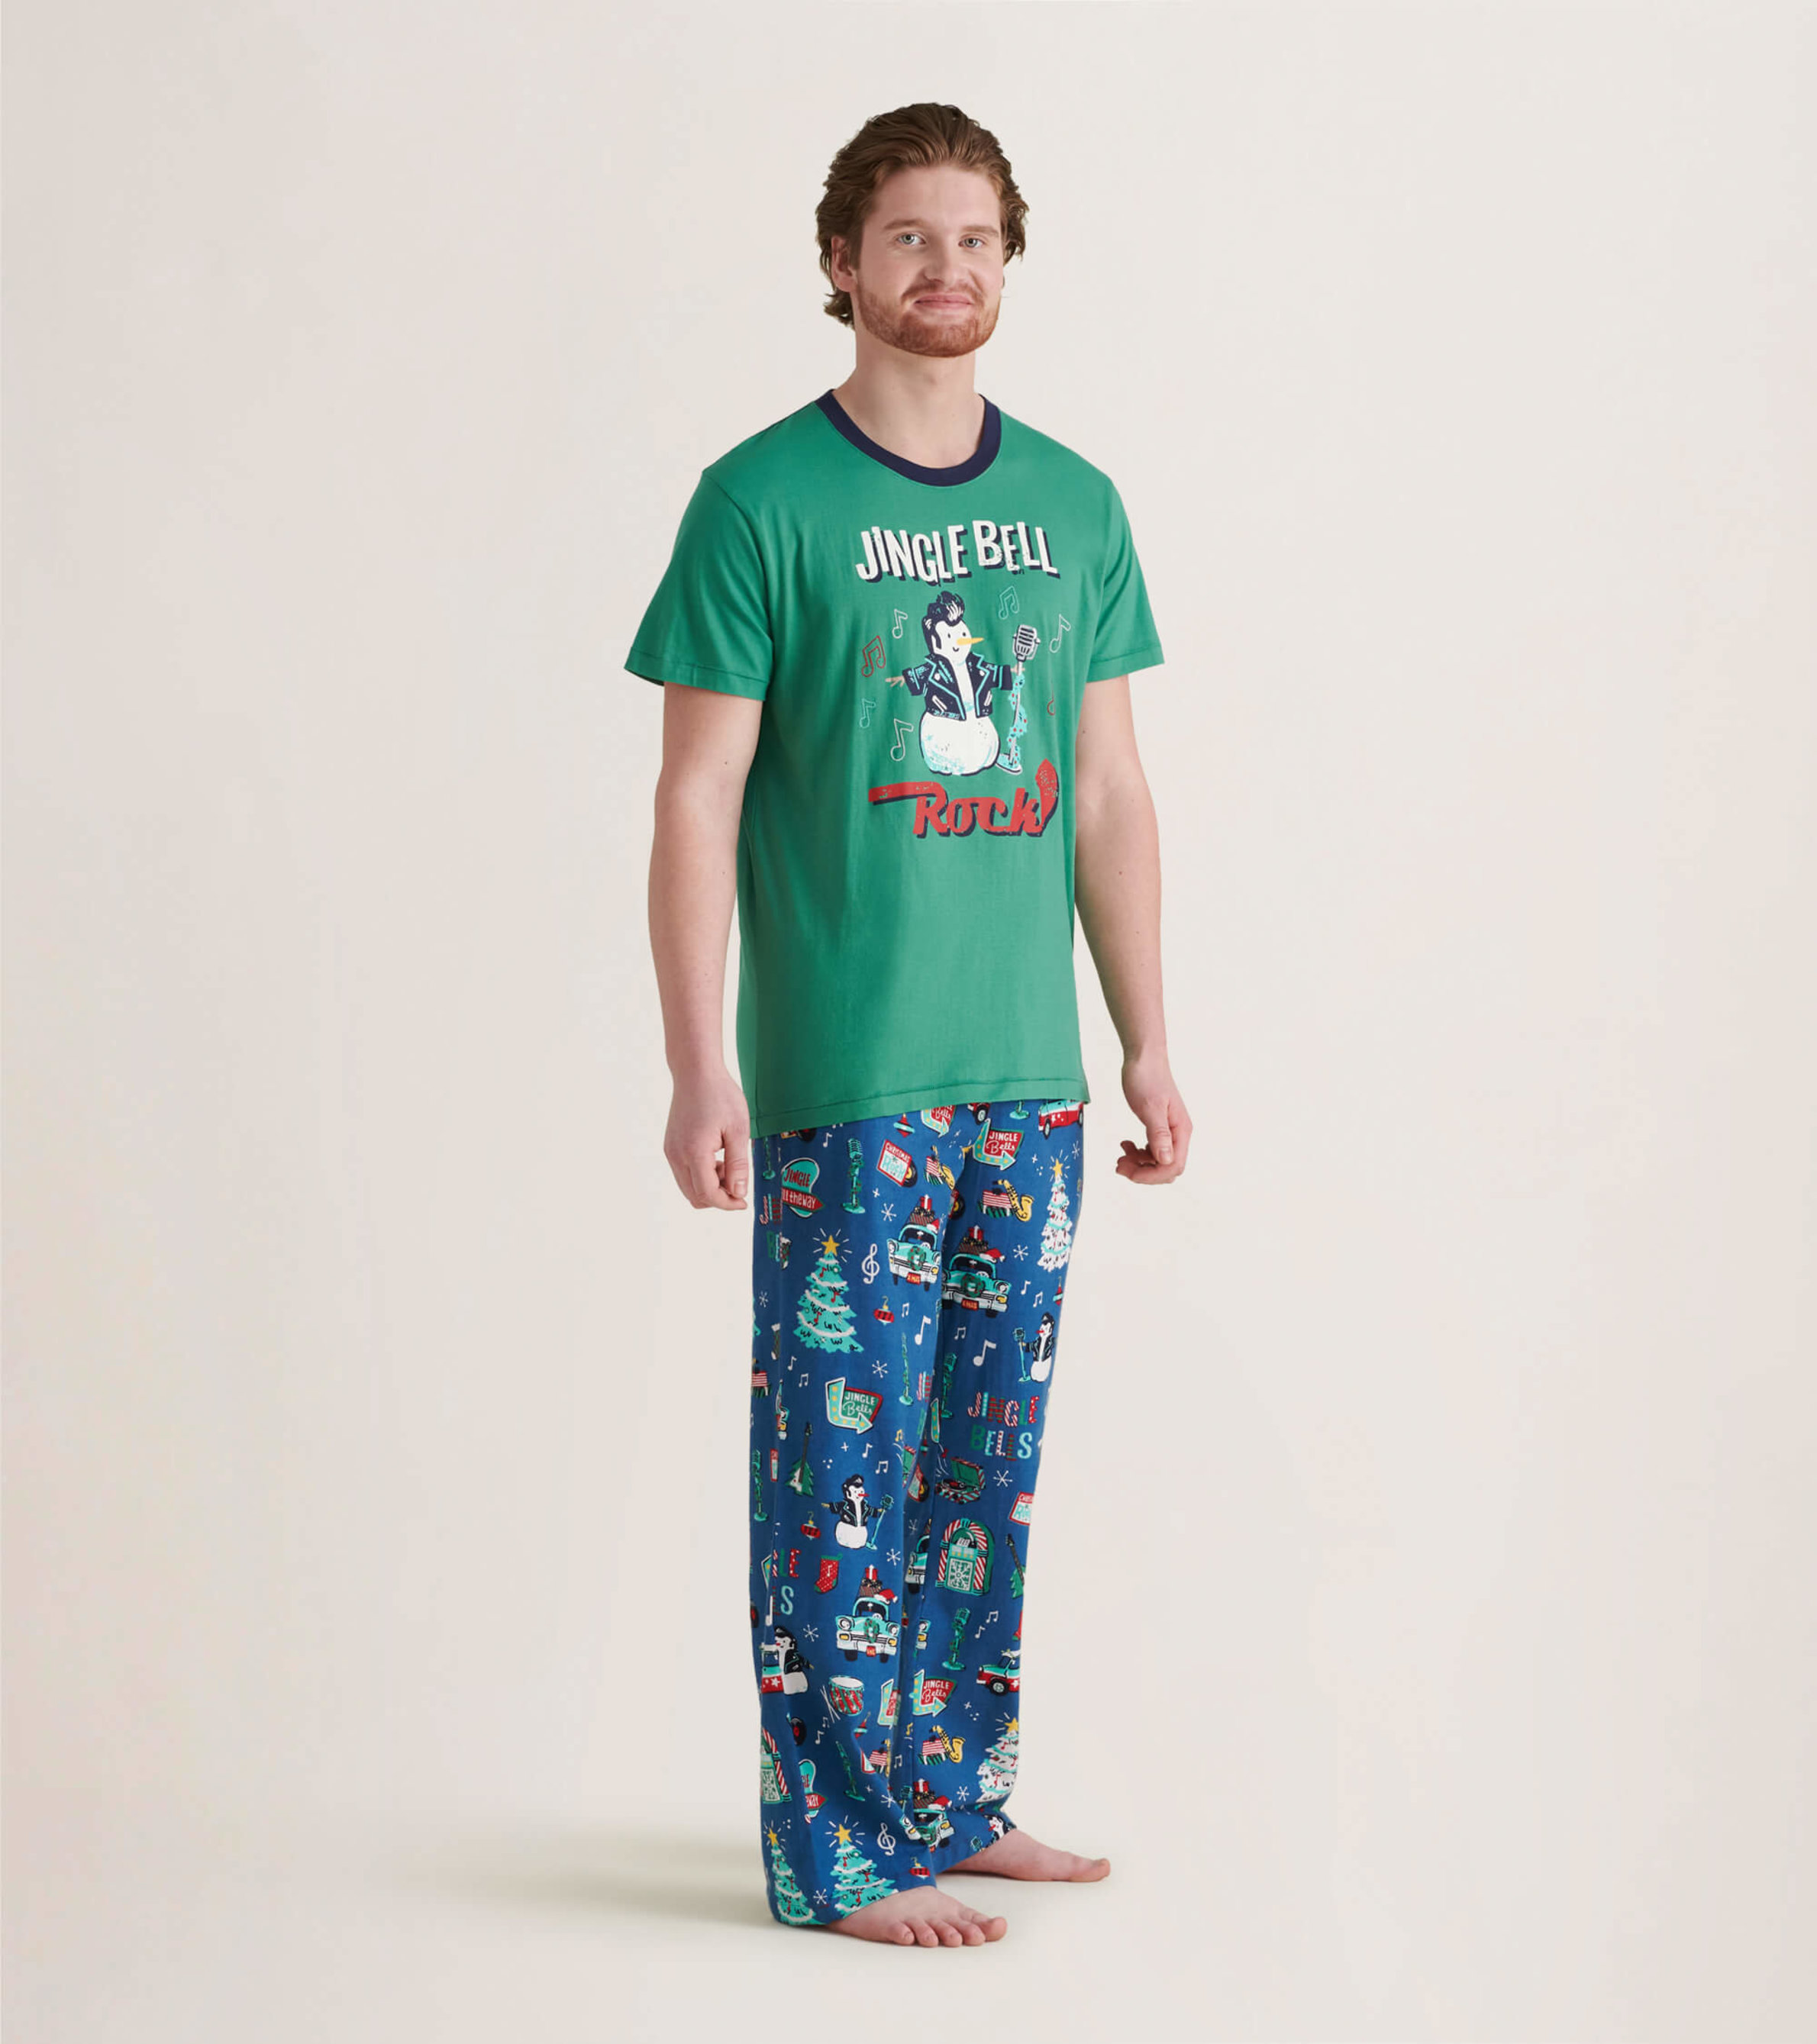 Unisex Adult Plaid Flannel Pajama Pants